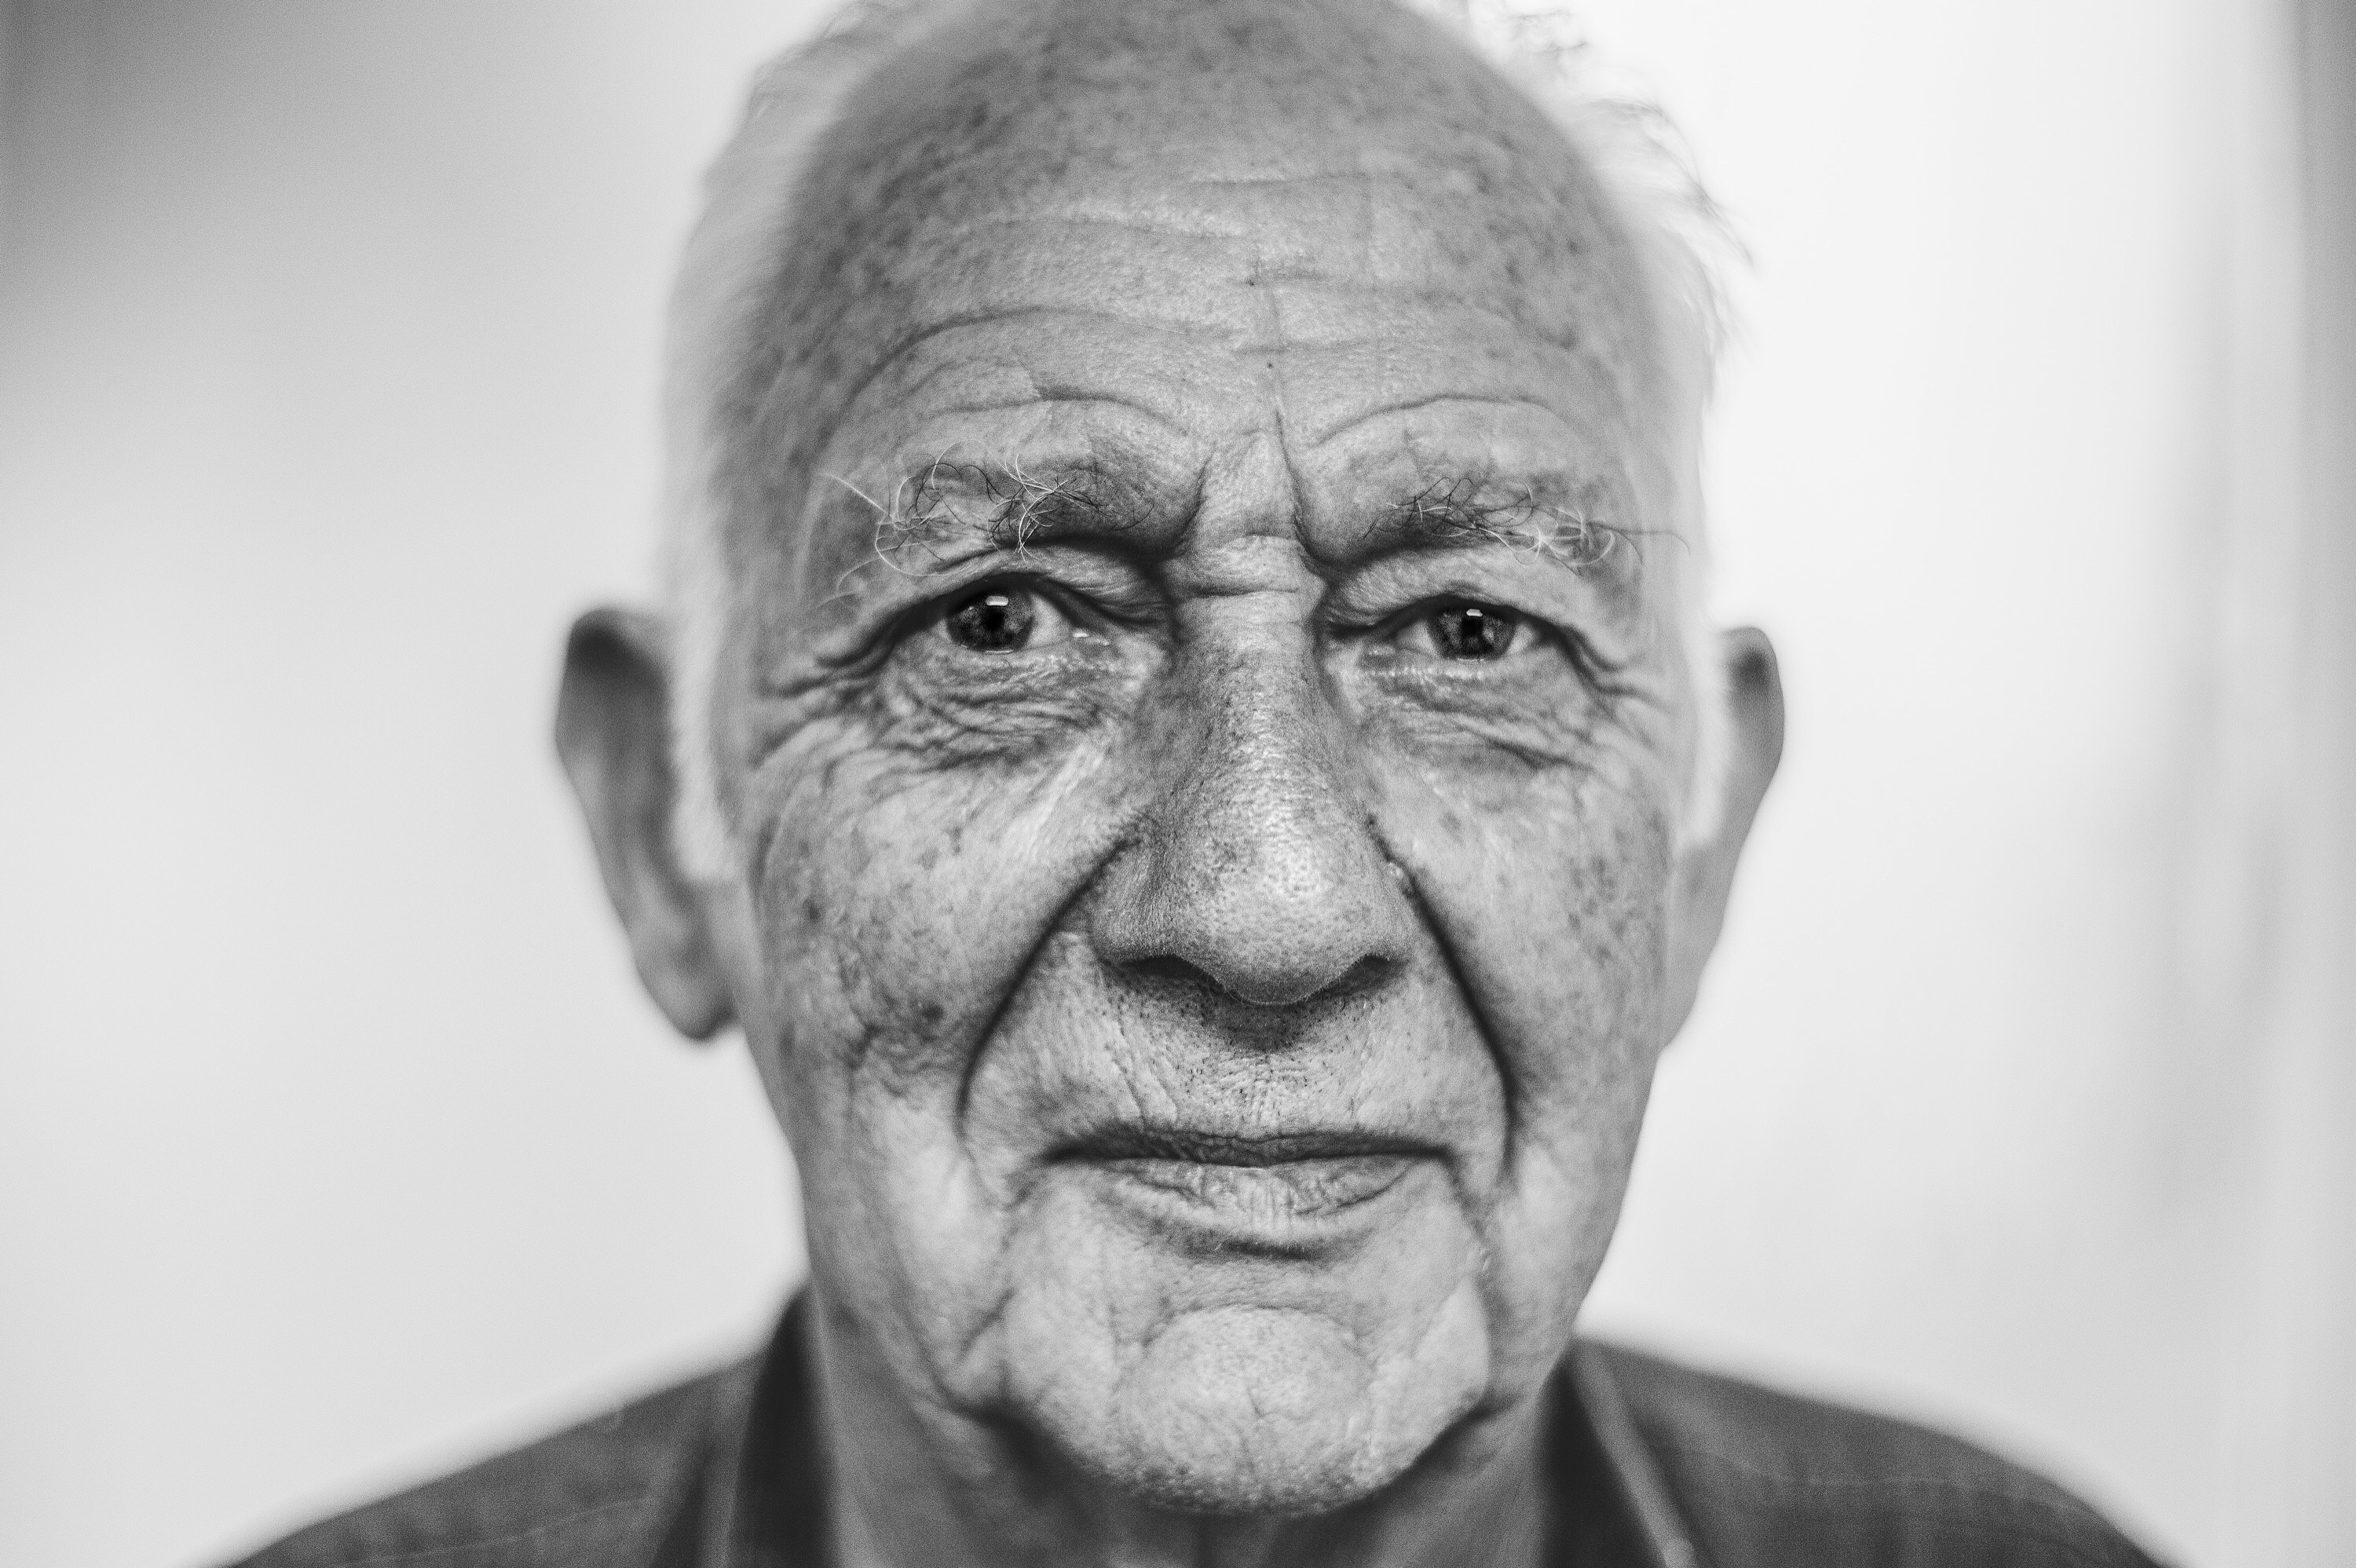 An elderly man.